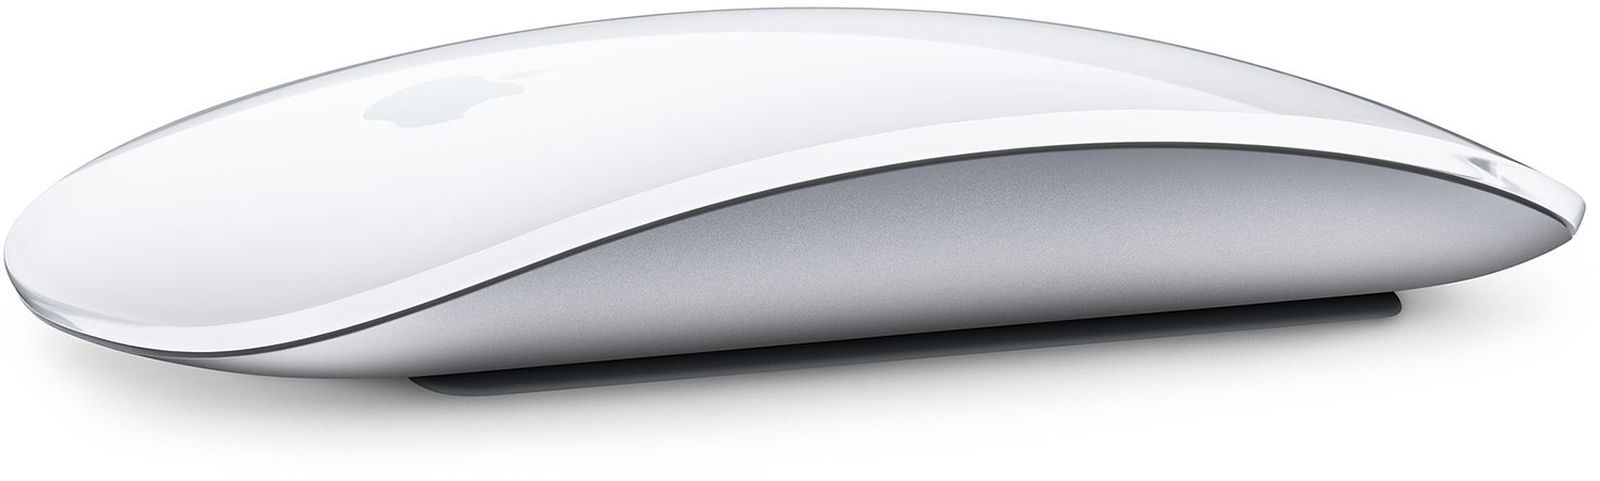 1640654206 Como personalizar el puntero del mouse en macOS Monterey